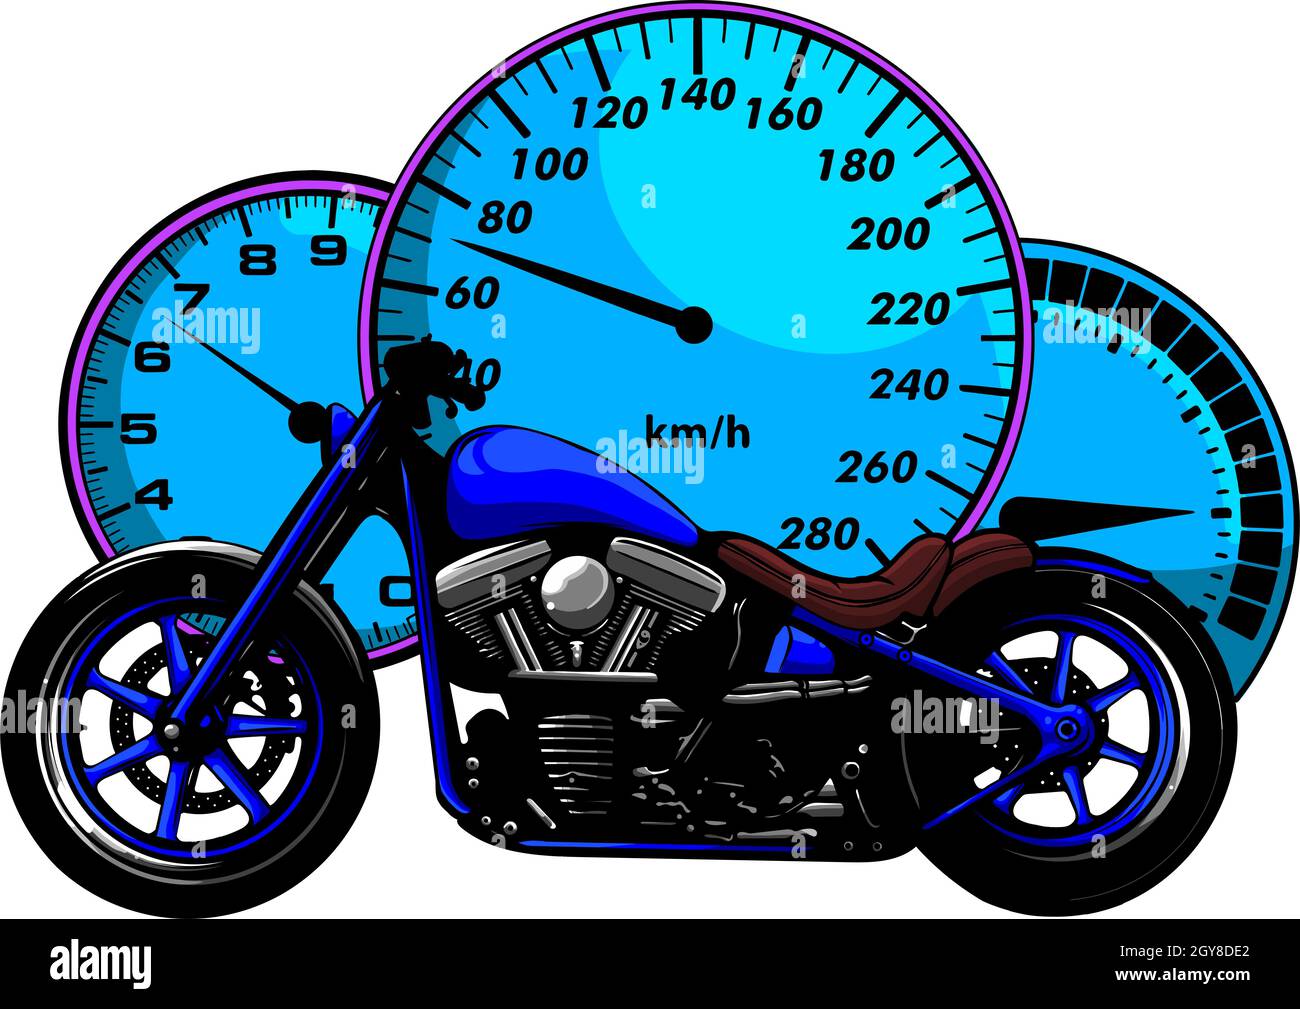 Compteur de vitesse moto Banque d'images détourées - Page 2 - Alamy